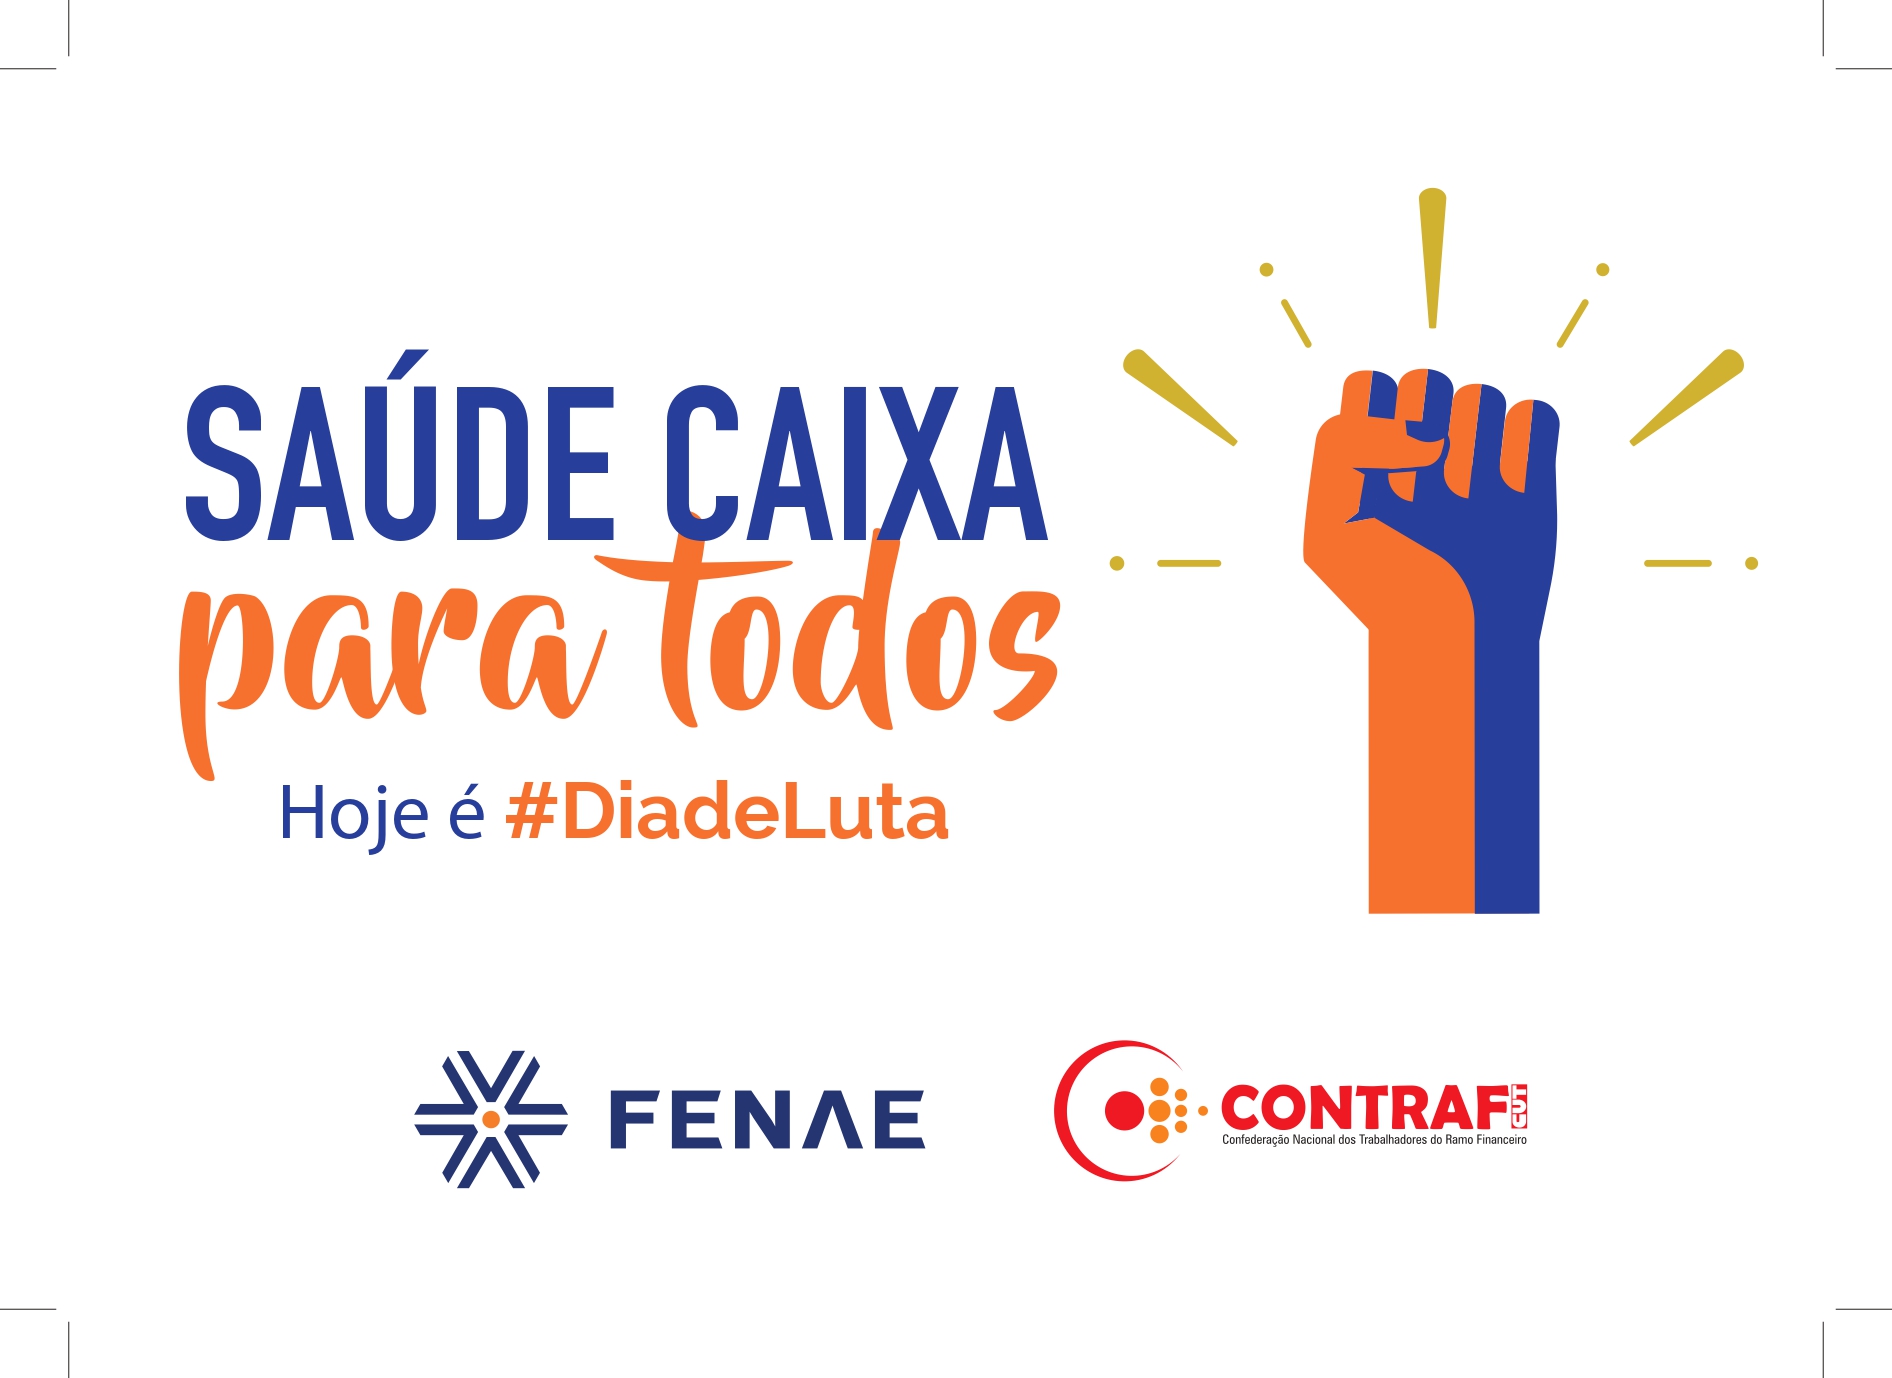 Empregados realizam #DiadeLuta em defesa do Saúde Caixa nesta quarta (11)